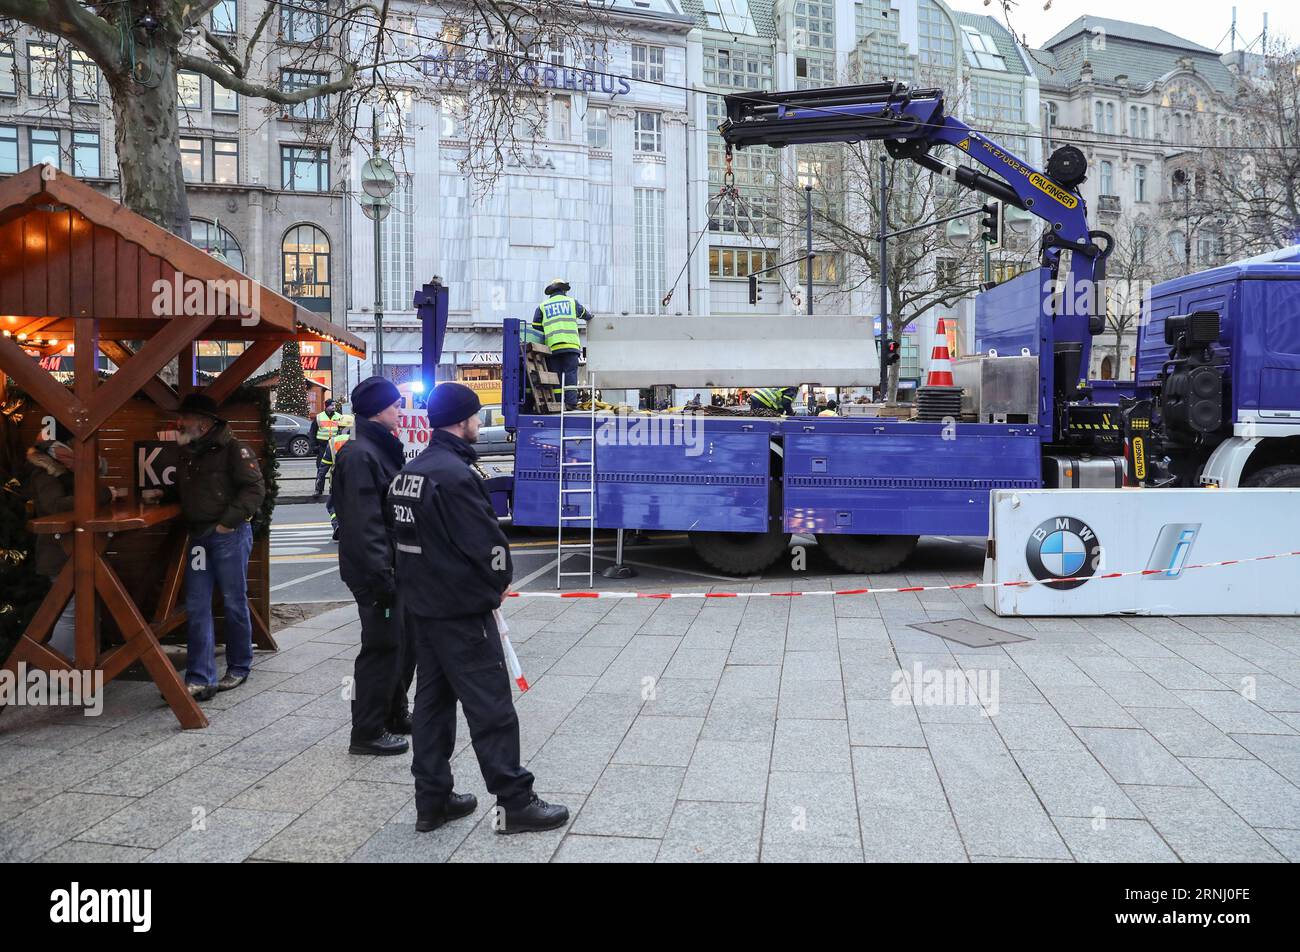 Anschlag in Berlin - Nizzasperren am Breitscheidplatz (161222) -- BERLIN, 22. Dezember 2016 -- Eine Zementbarriere wird von der Polizei um den wiedereröffneten Weihnachtsmarkt am Breitscheid-Platz in Berlin, Hauptstadt, am 22. Dezember 2016 gelegt. Der Weihnachtsmarkt hier wurde am Montag angegriffen und am Donnerstag wieder eröffnet. ) (gl) DEUTSCHLAND-BERLIN-ANGEGRIFFENER WEIHNACHTSMARKT-WIEDERERÖFFNUNG ShanxYuqi PUBLICATIONxNOTxINxCHN Halt in Berlin bei Verwaltungen Berlin DEZ 22 2016 eine Zementbarriere WIRD von der Polizei AM 22. DEZ 2016 um den wiedereröffneten Weihnachtsmarkt AM Breitscheid-Platz in der Berliner Hauptstadt platziert Stockfoto